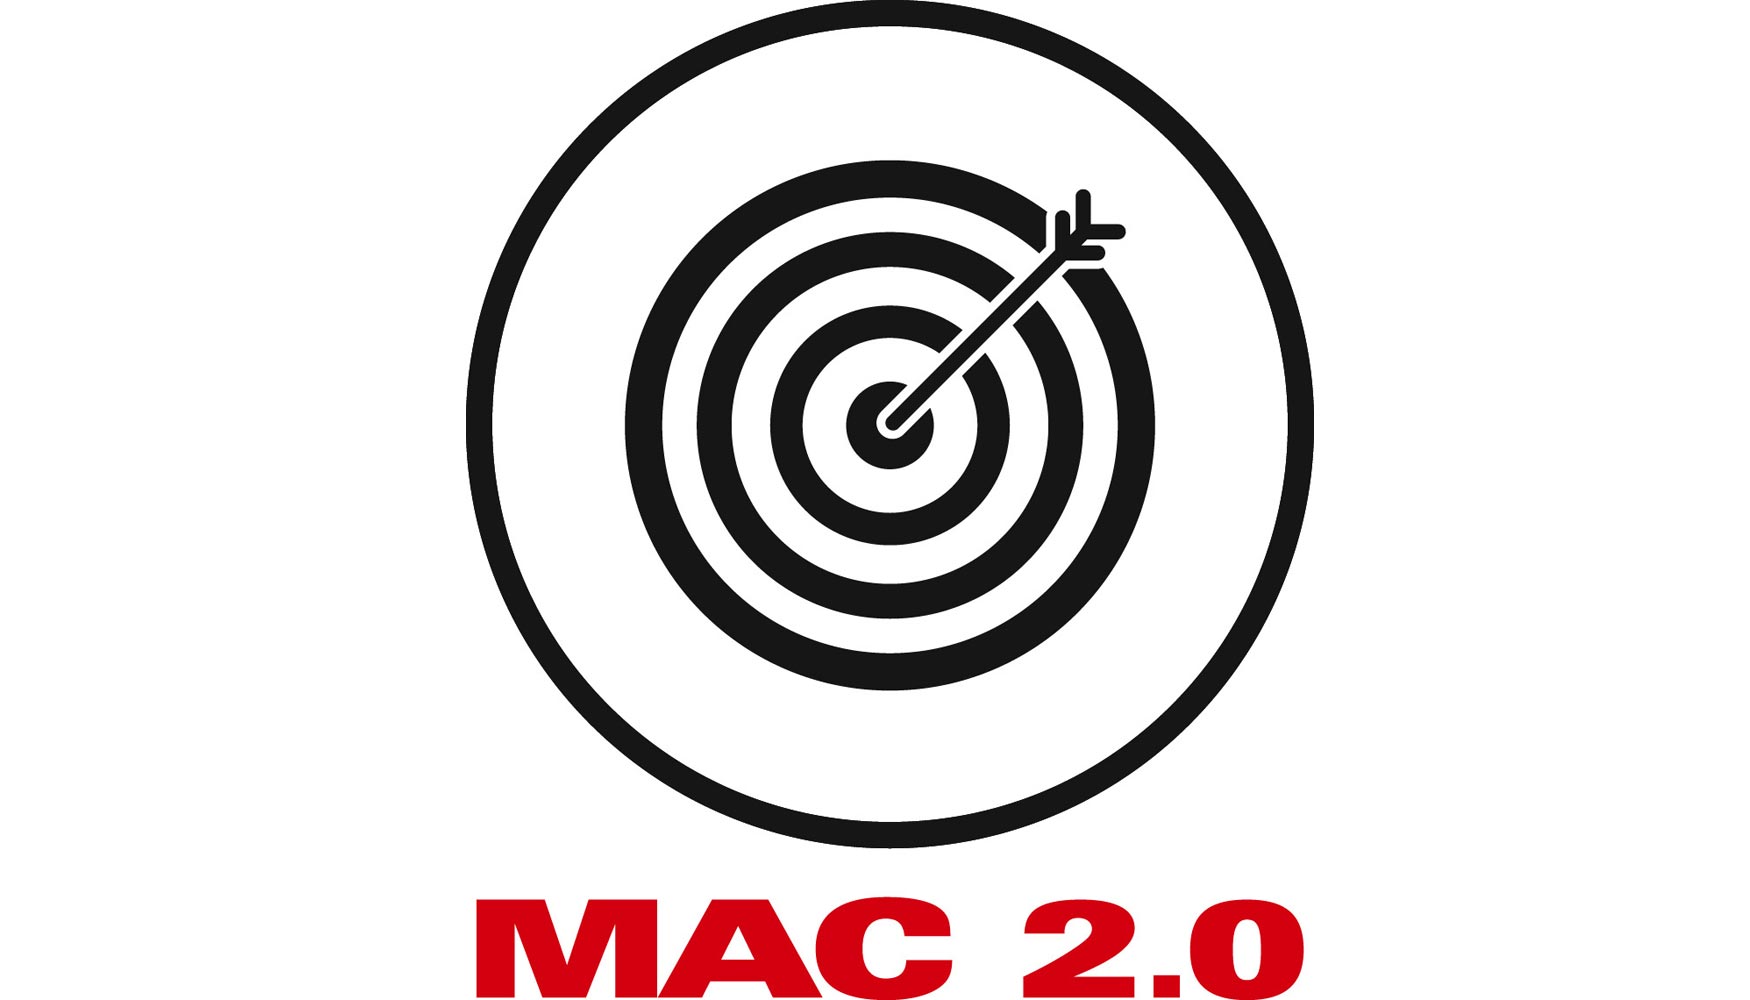 La tecnologa MAC 2.0 tambin contribuye a la reduccin del coste por pieza gracias a proporcionar resultados exactos de plegado...